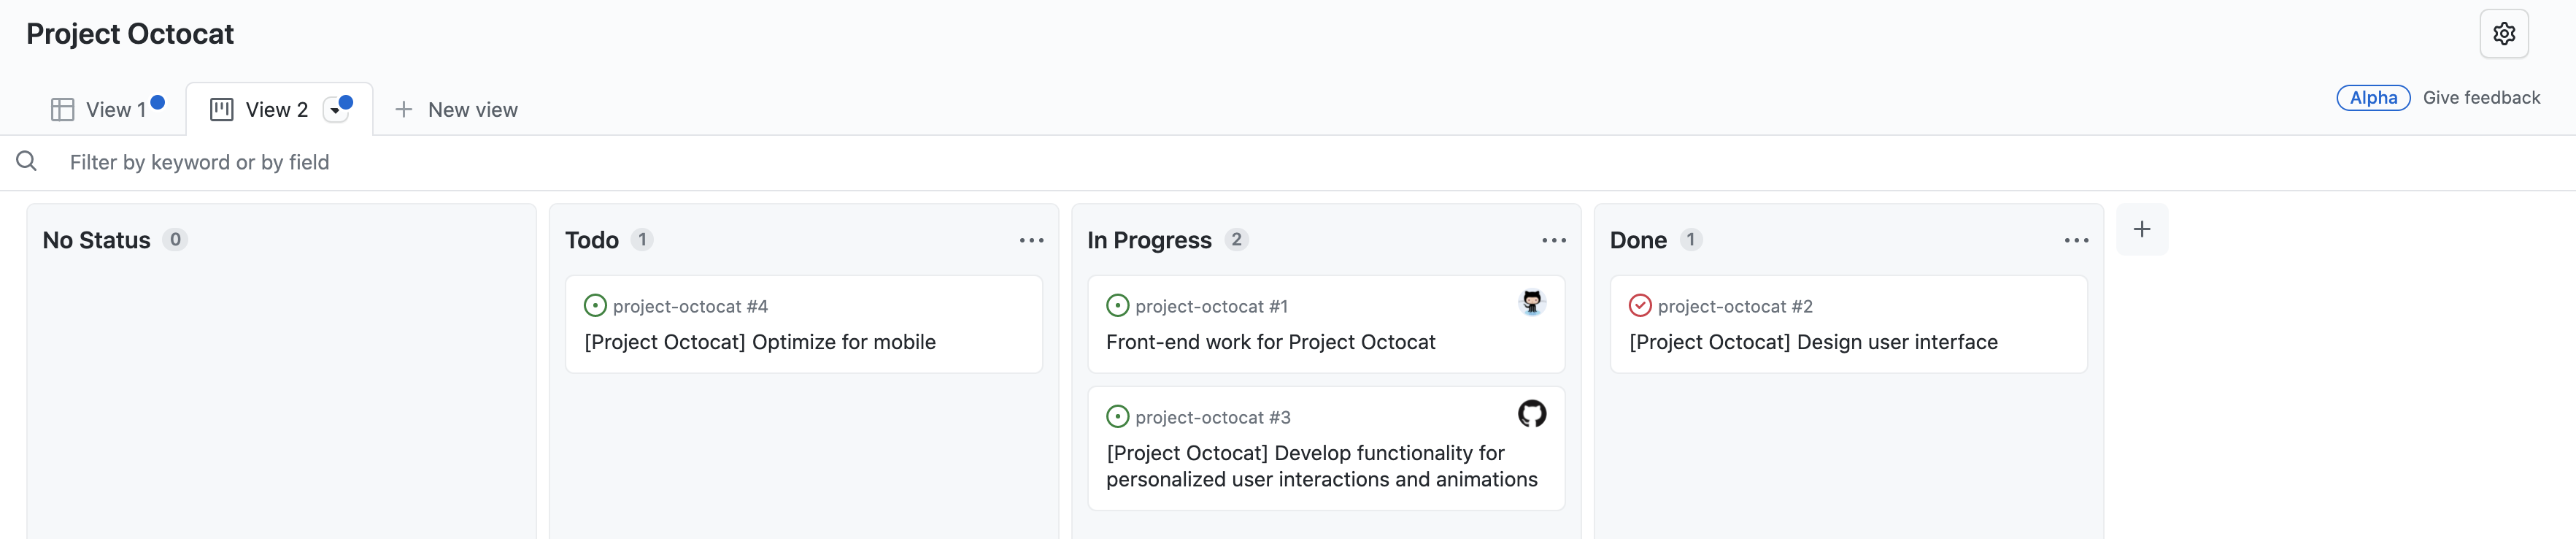 "Project Octocat" プロジェクトのボード ビューのスクリーンショット。issue が [状態なし]、[To do]、[進行中]、[完了] の列に整理されています。